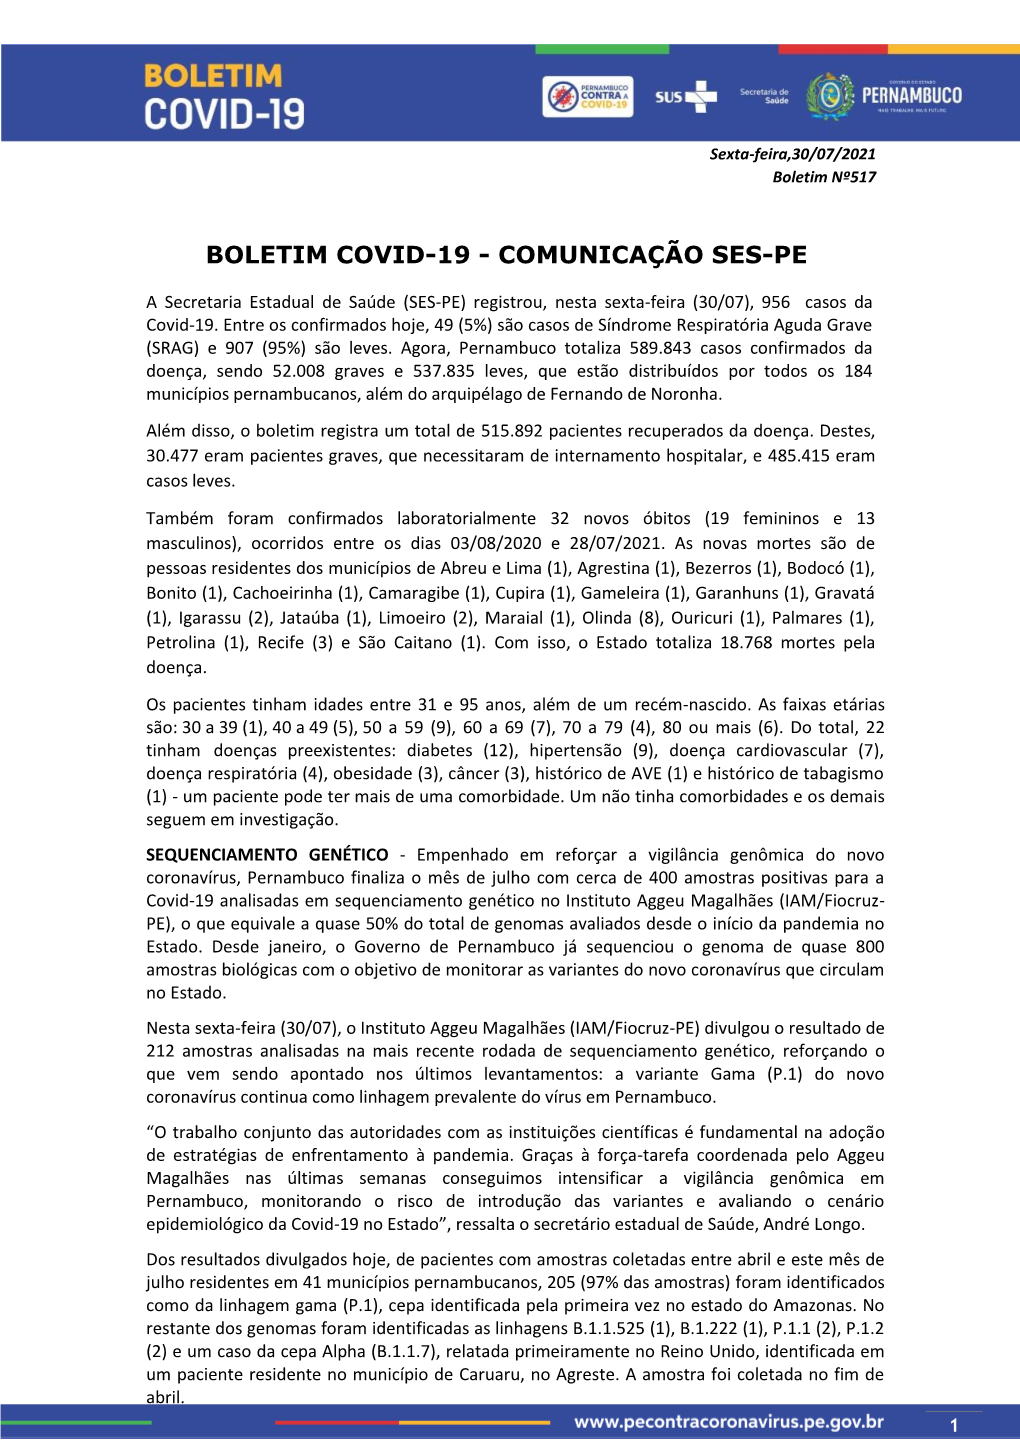 Boletim Covid-19 Comunicação Ses Pe